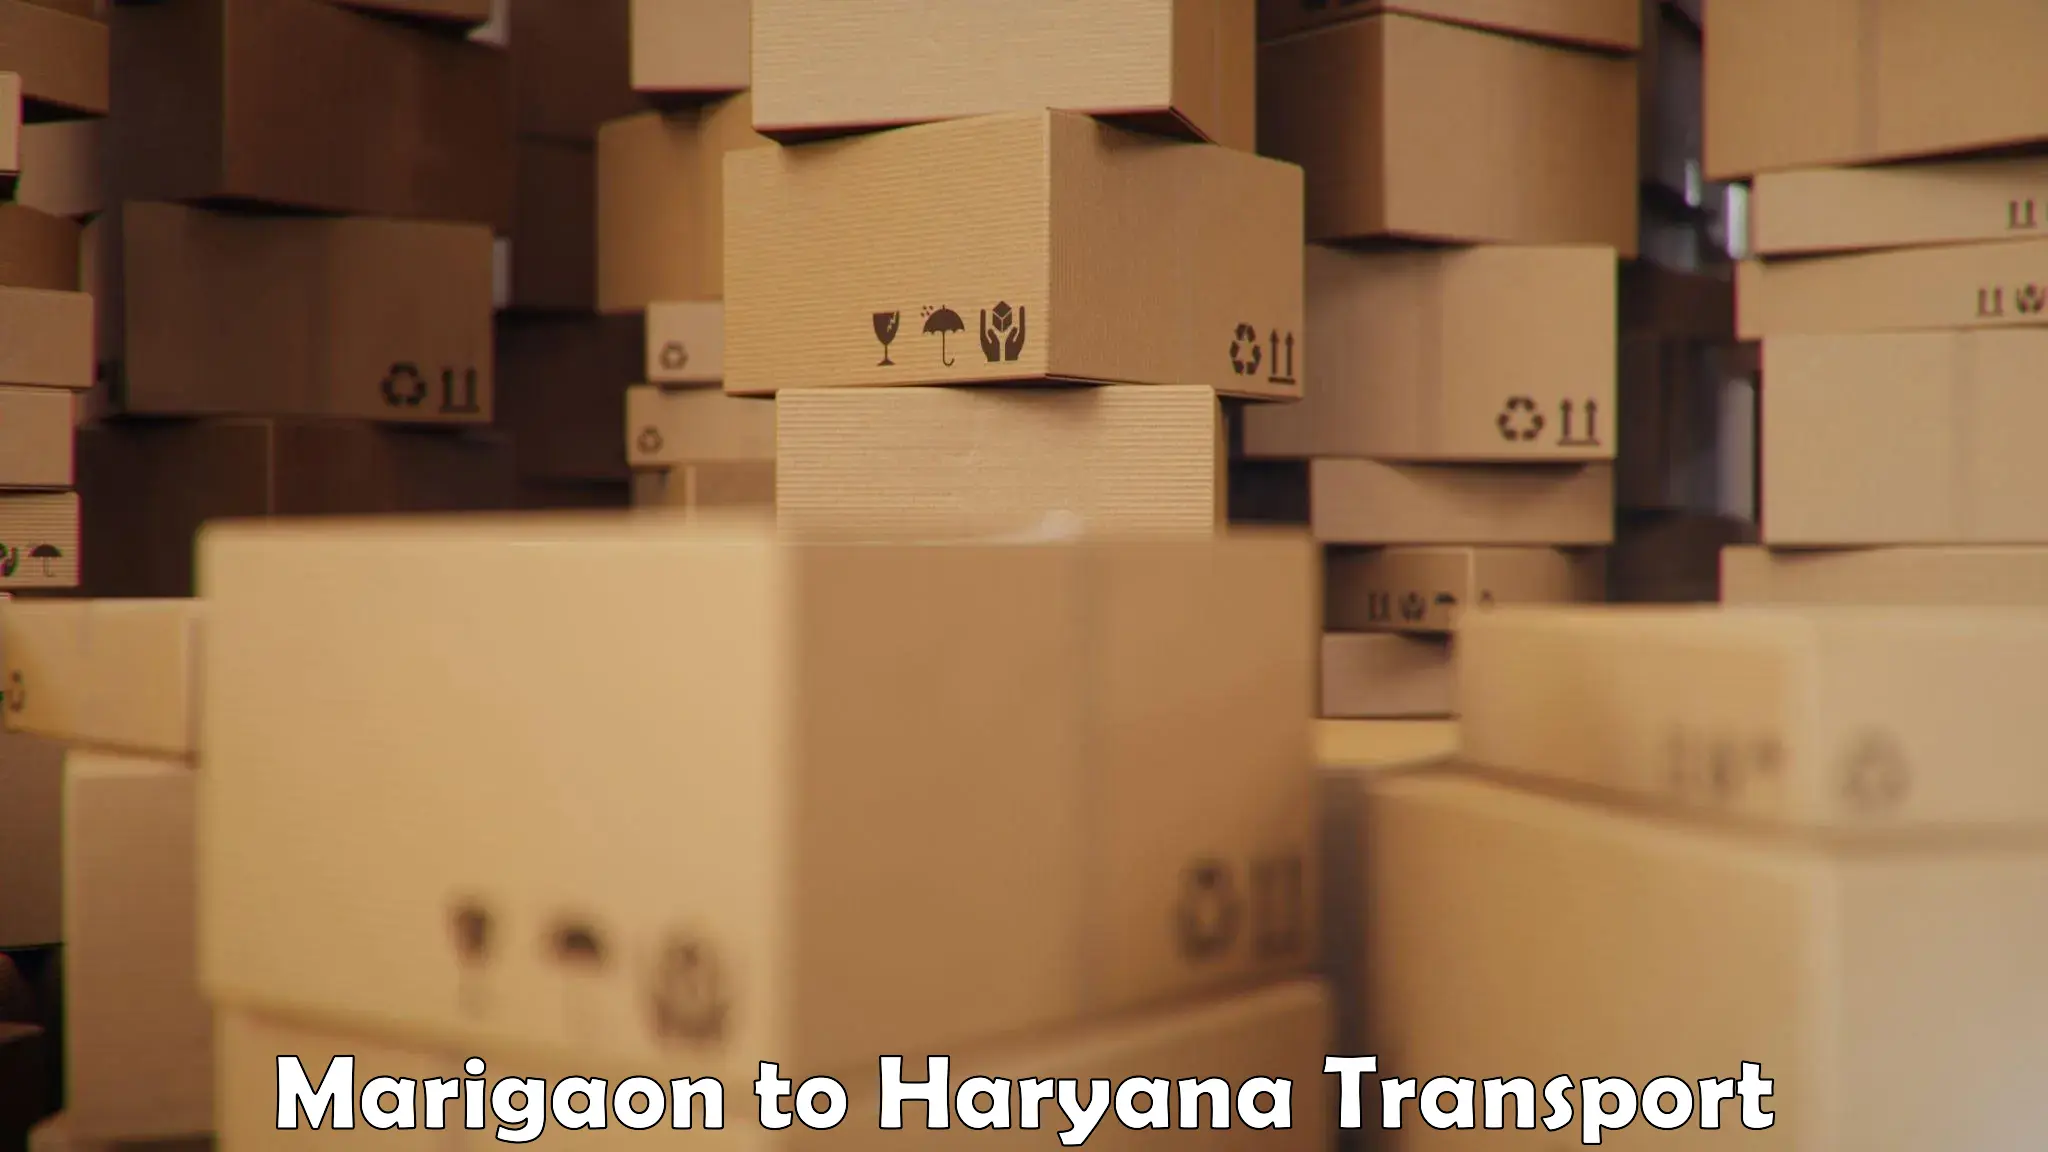 Furniture transport service Marigaon to Dharuhera